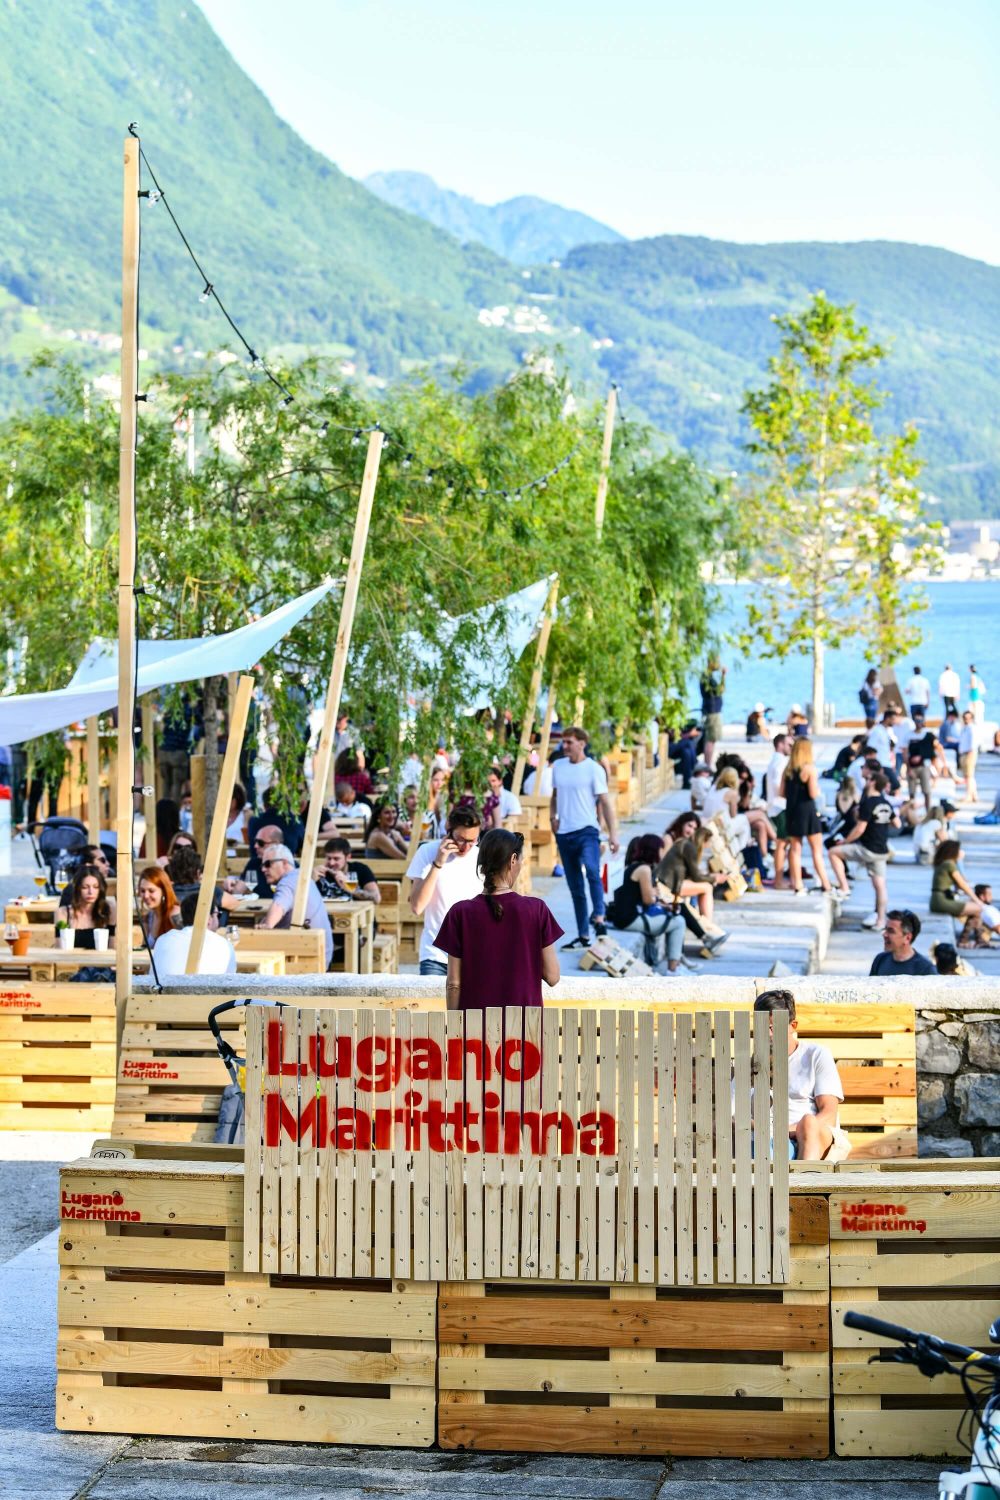 Lugano Marittima (Bild: © Città di Lugano)